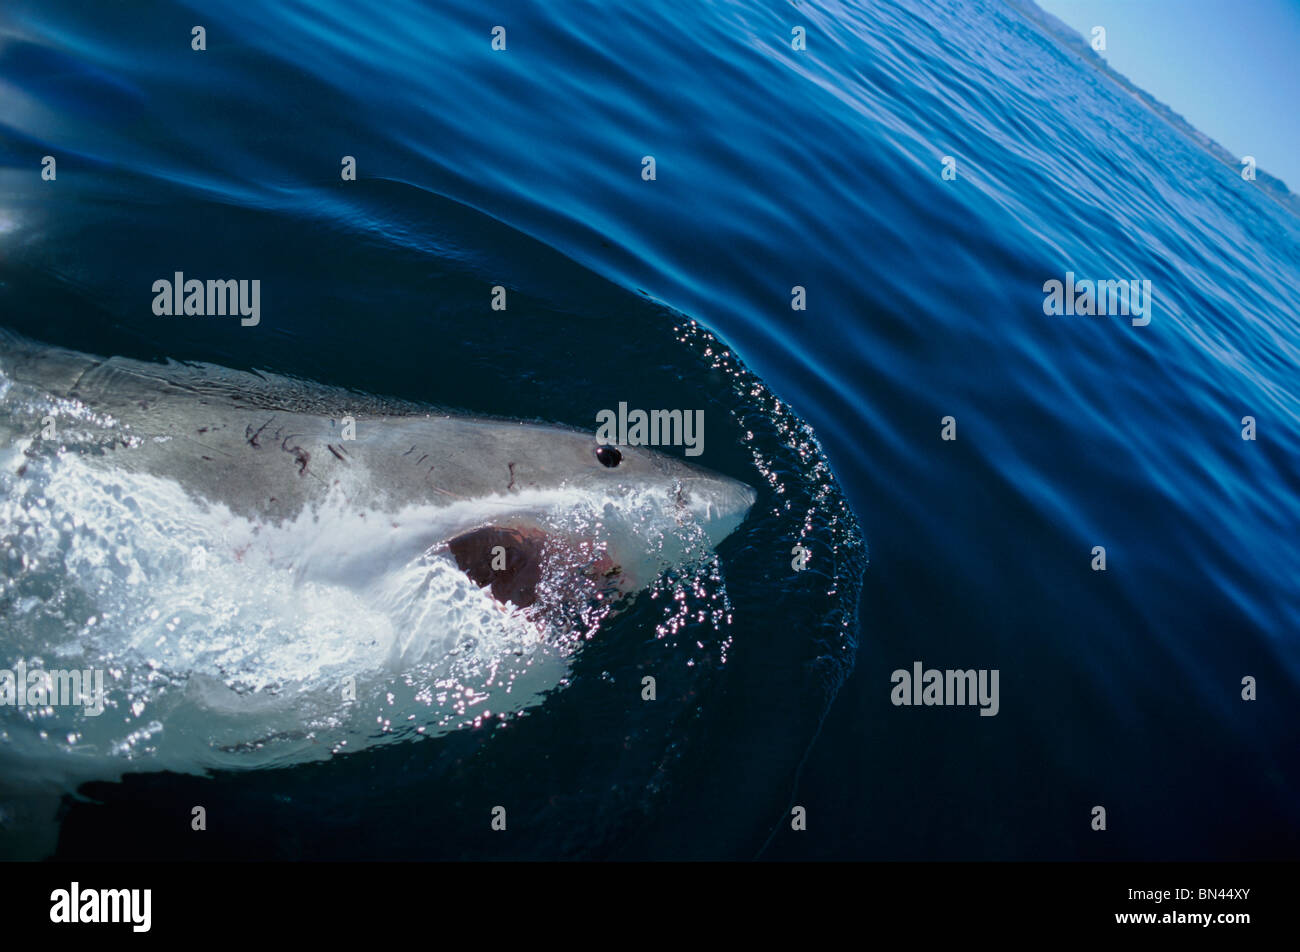 Il grande squalo bianco (Carcharodon carcharias), isola di Dyer, Sud Africa - Oceano Atlantico. Foto Stock